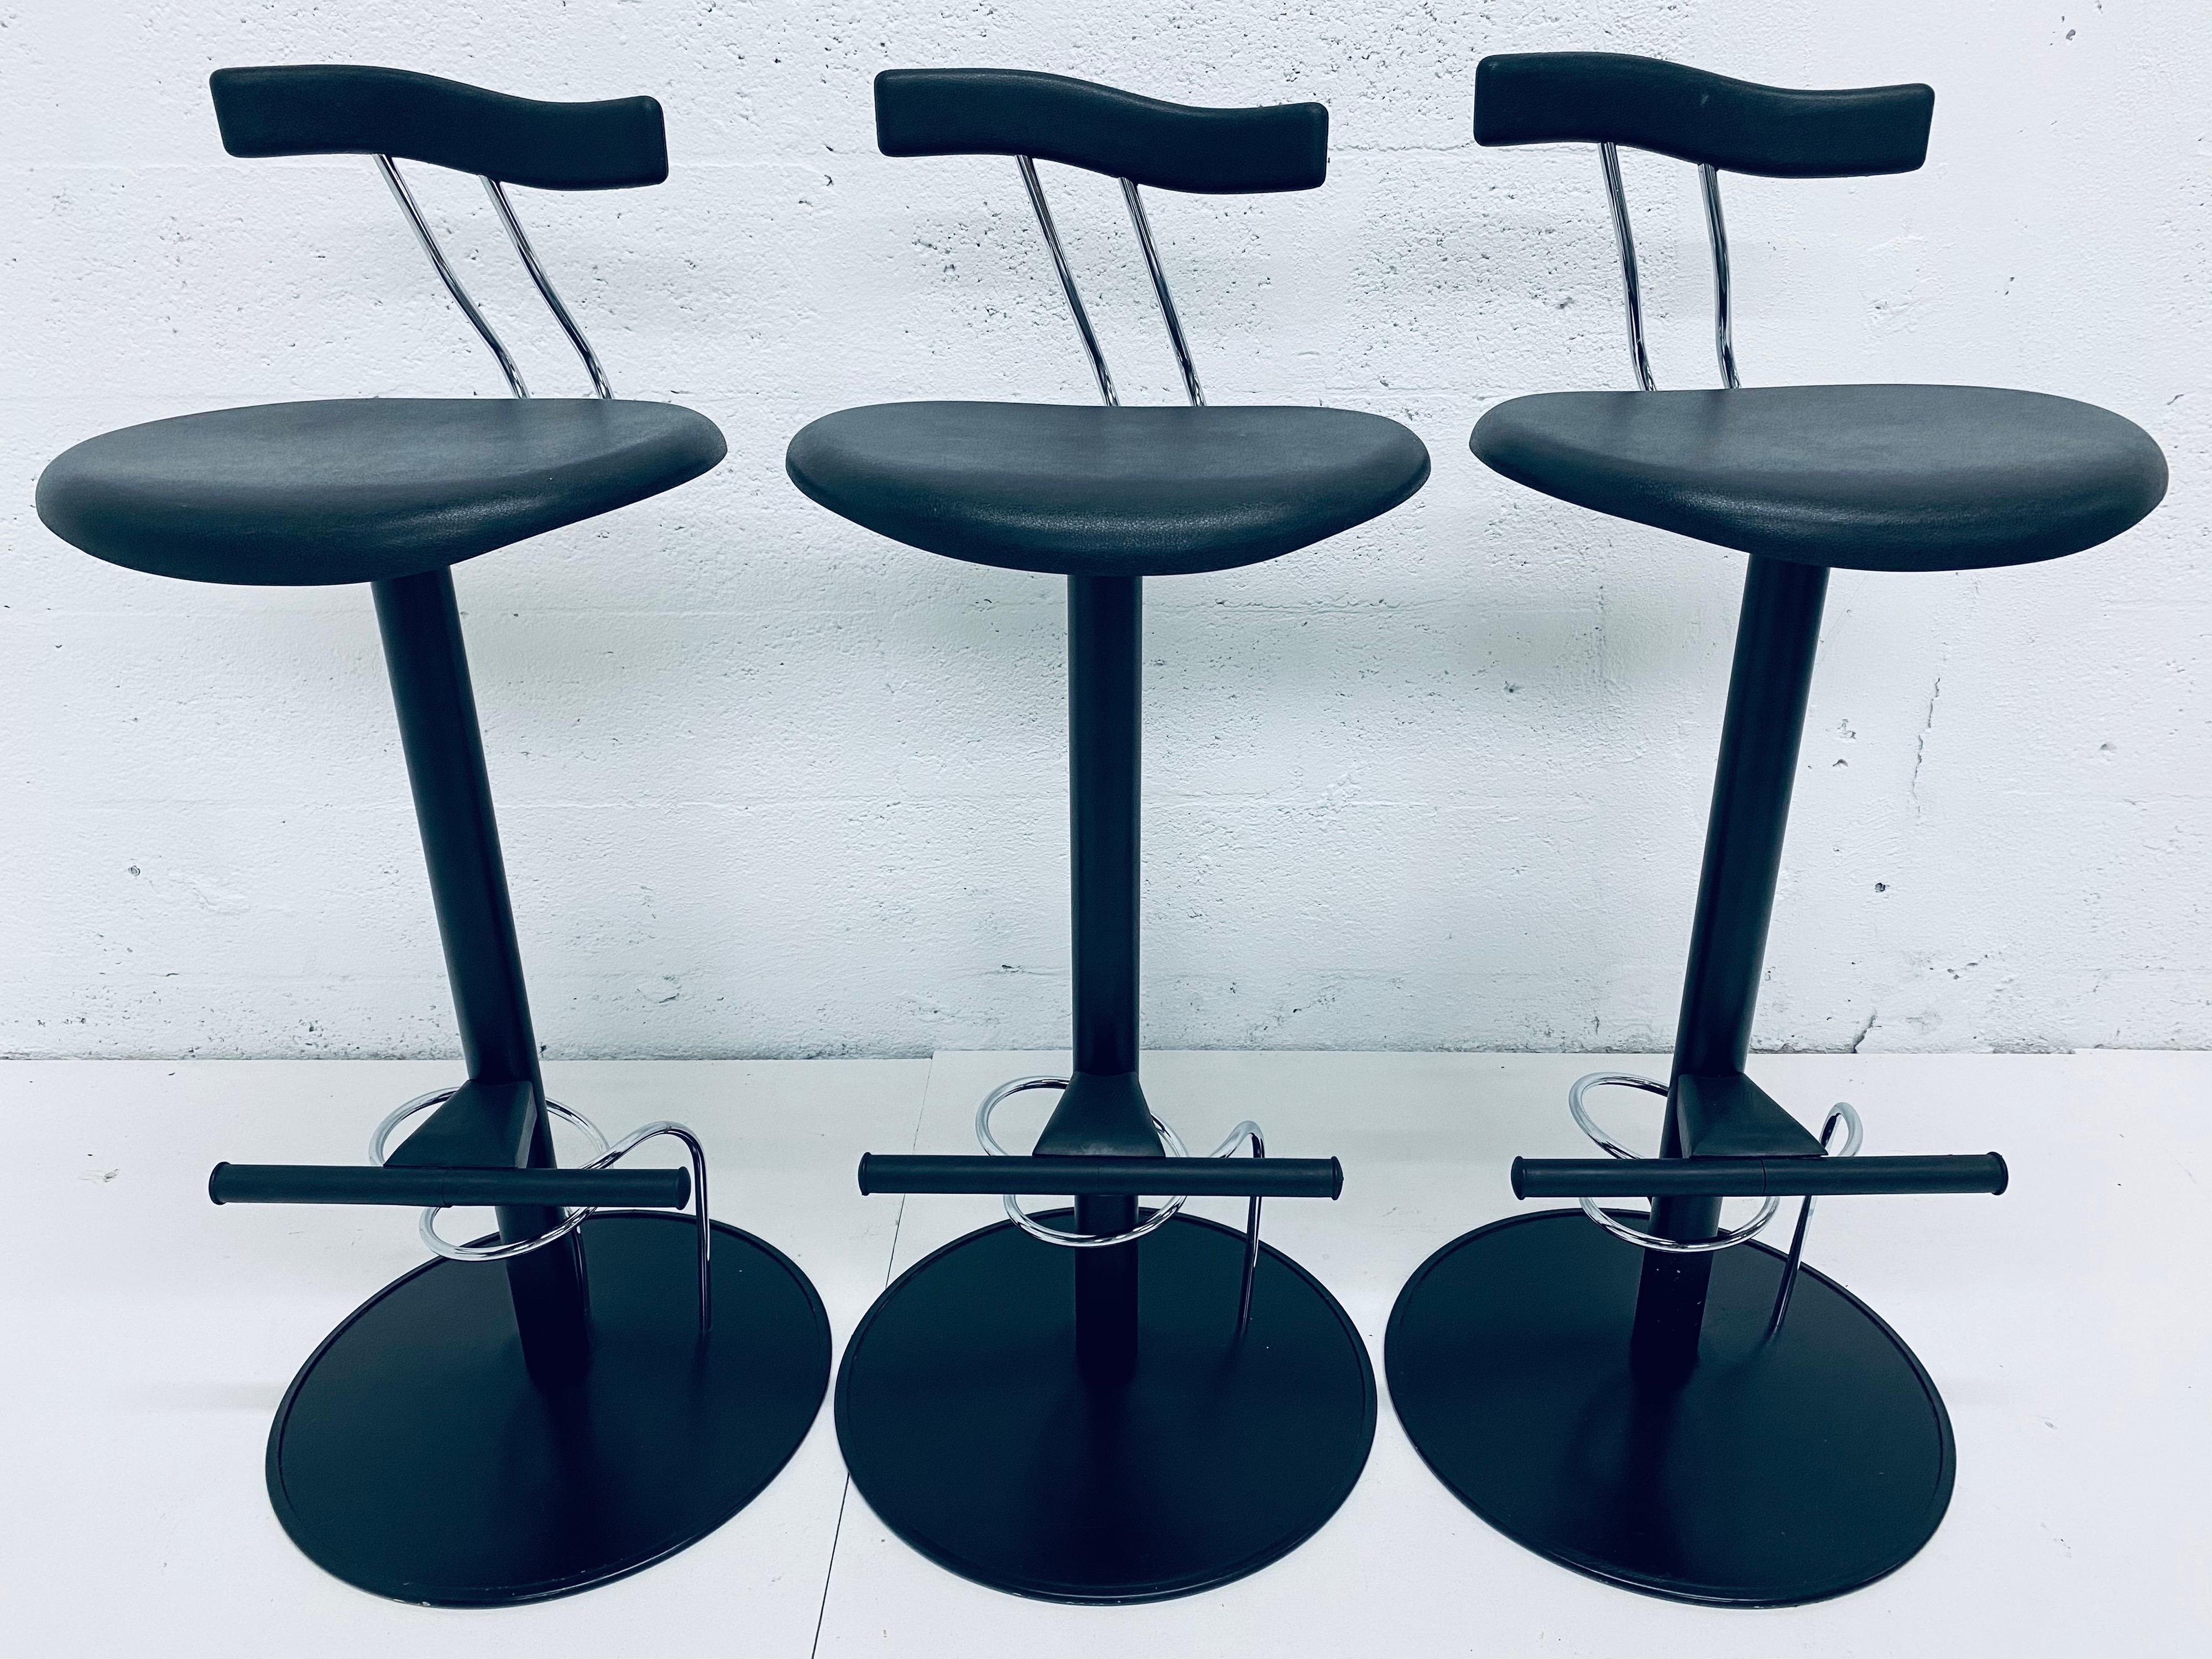 Trois chaises de bar de style postmoderne italien inspirées de Memphis Milano. En acier laqué noir avec sièges et dossiers en caoutchouc moulé noir.